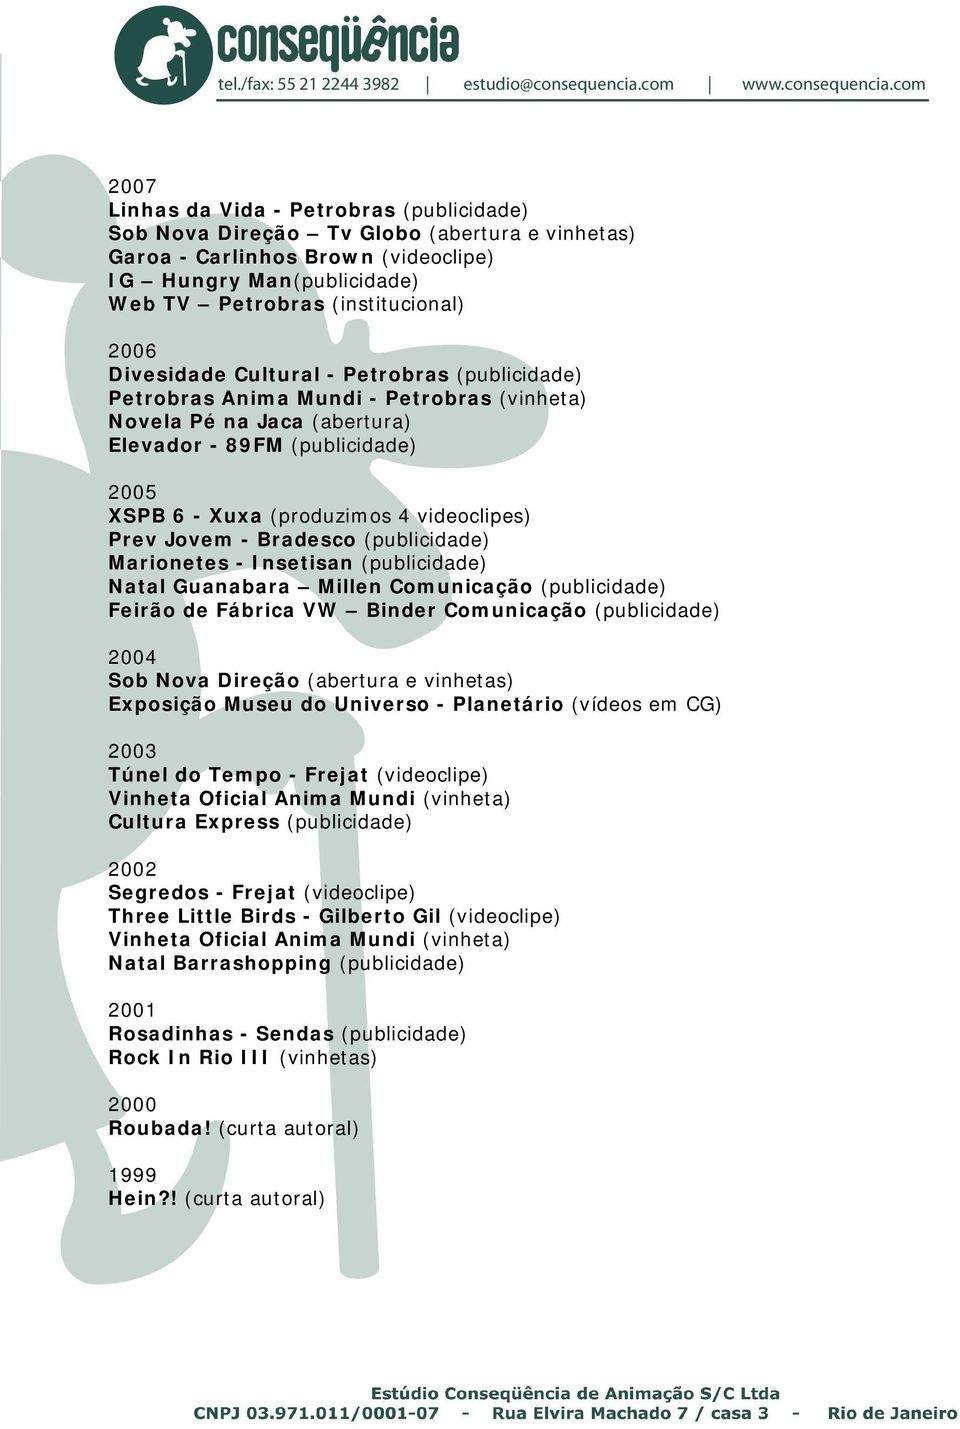 Marionetes - Insetisan (publicidade) Natal Guanabara Millen Comunicação (publicidade) Feirão de Fábrica VW Binder Comunicação (publicidade) 2004 Sob Nova Direção (abertura e vinhetas) Exposição Museu